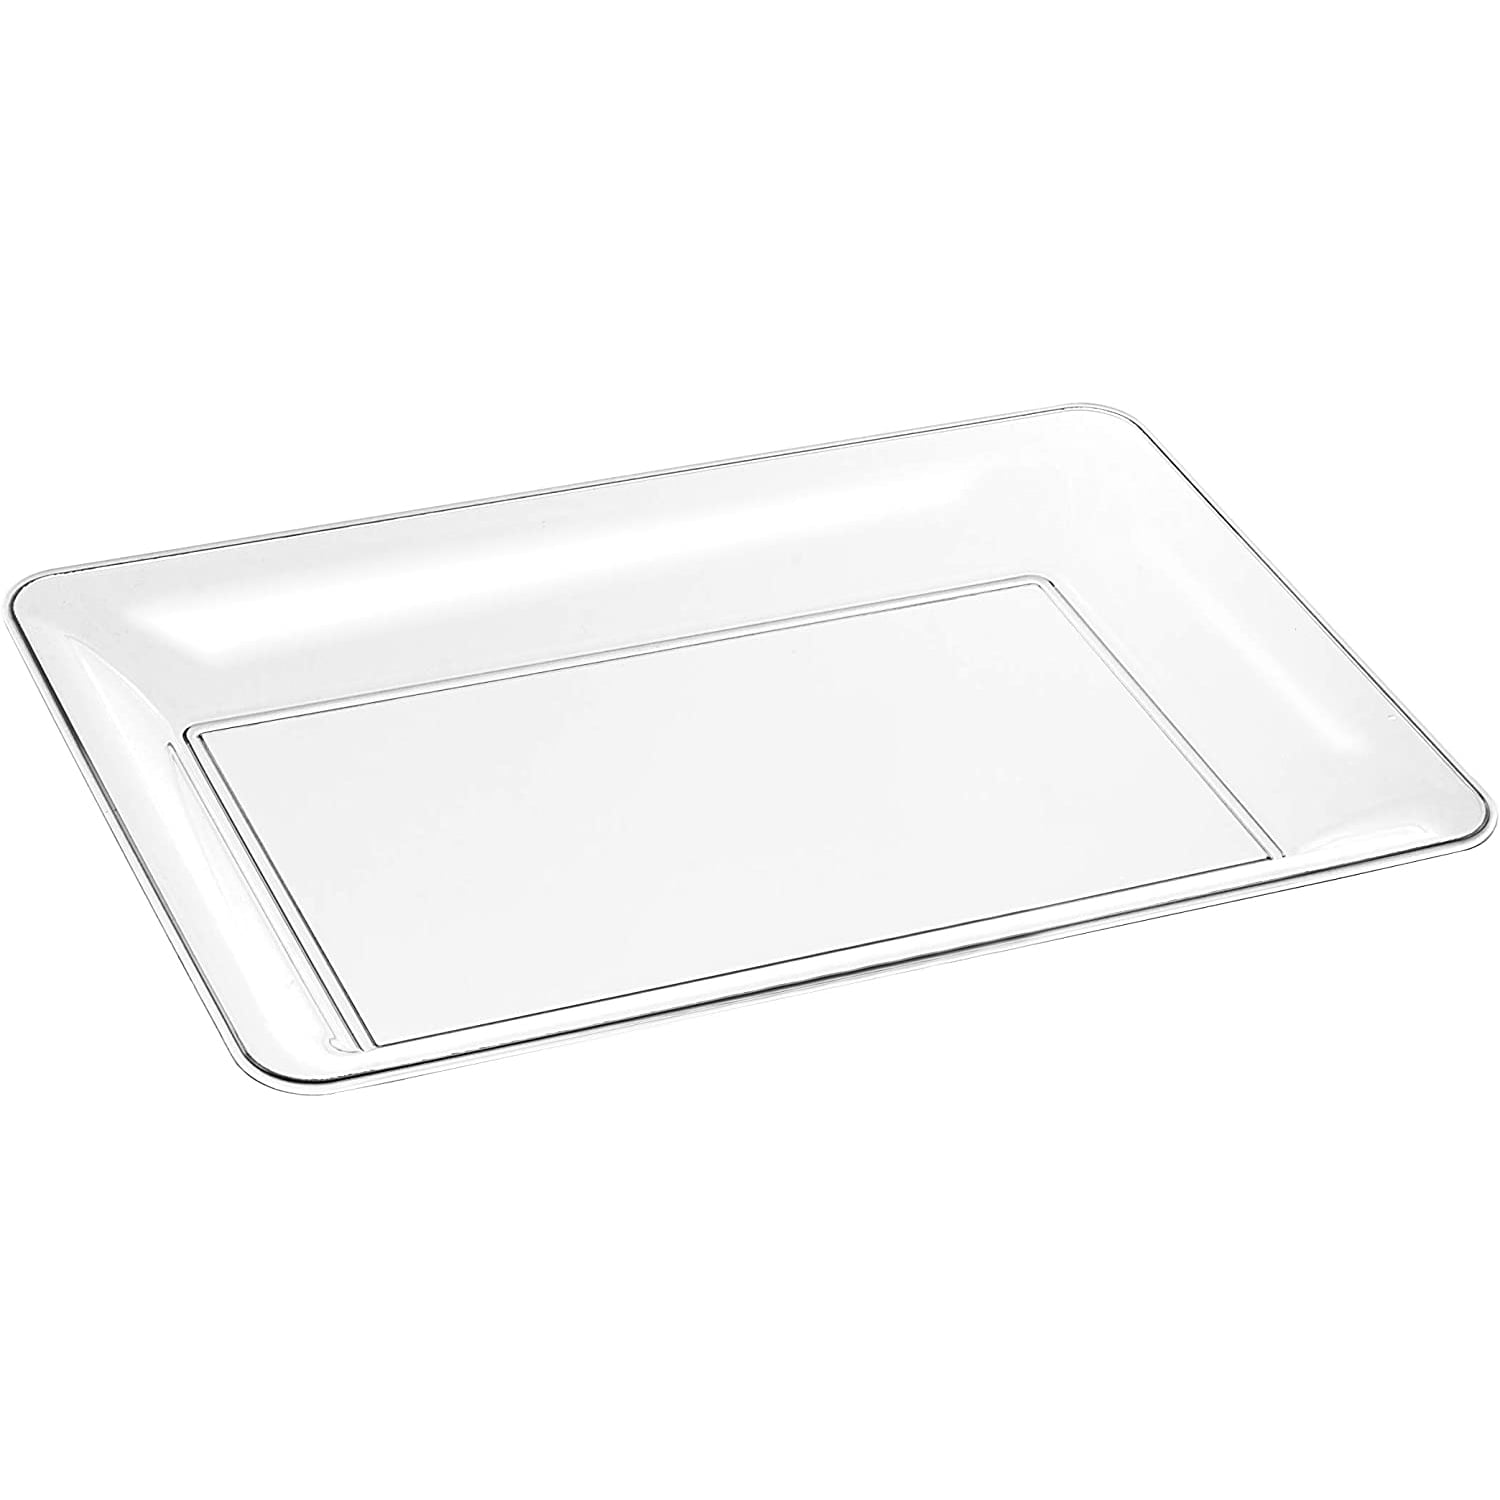  MILISTEN 6pcs Plastic Square Plate Tray Small Plastic